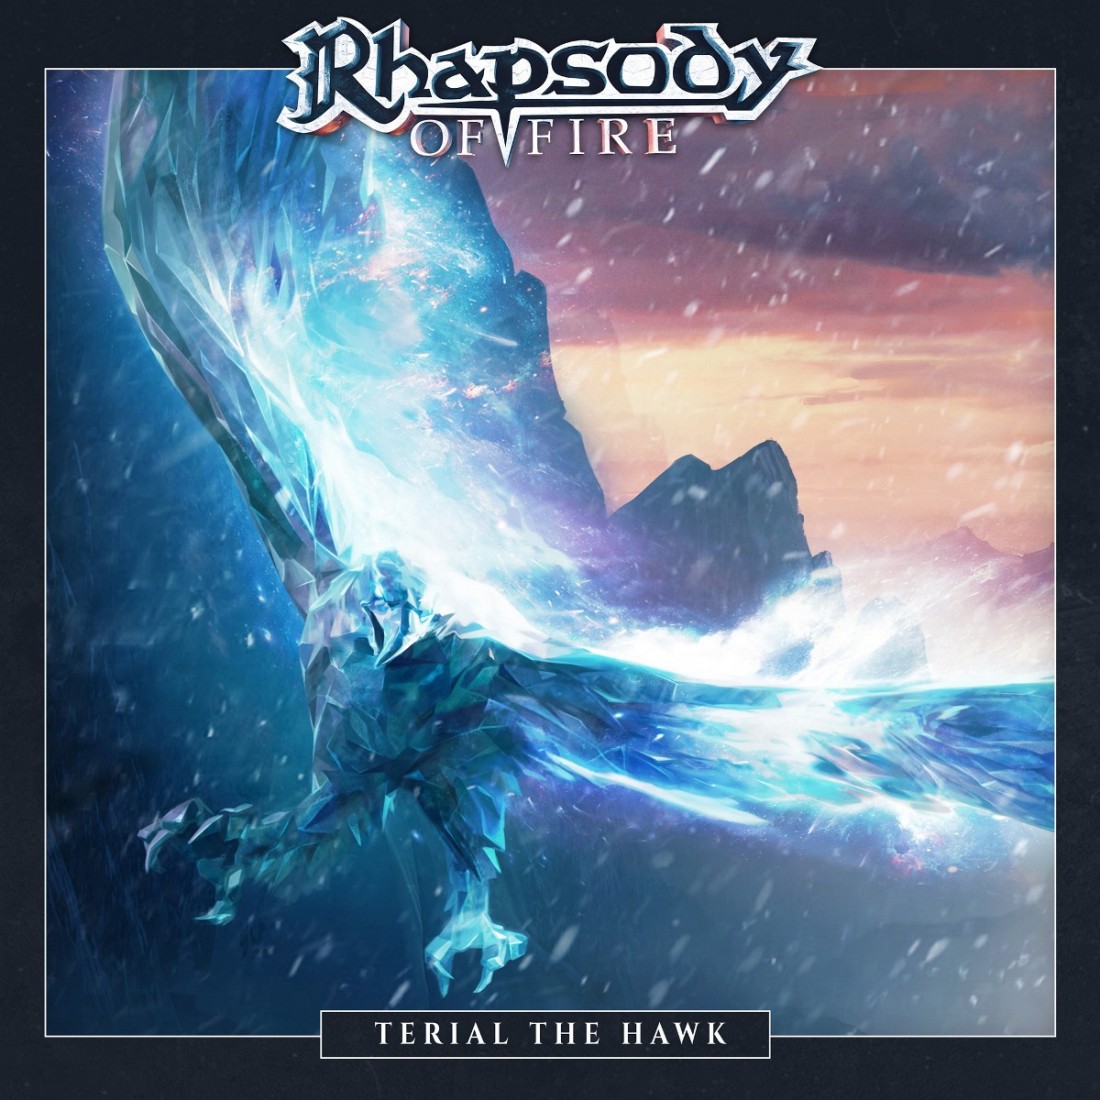 Rhapsody of Fire - Terial the Hawk (Single) (2021) скачать торрент